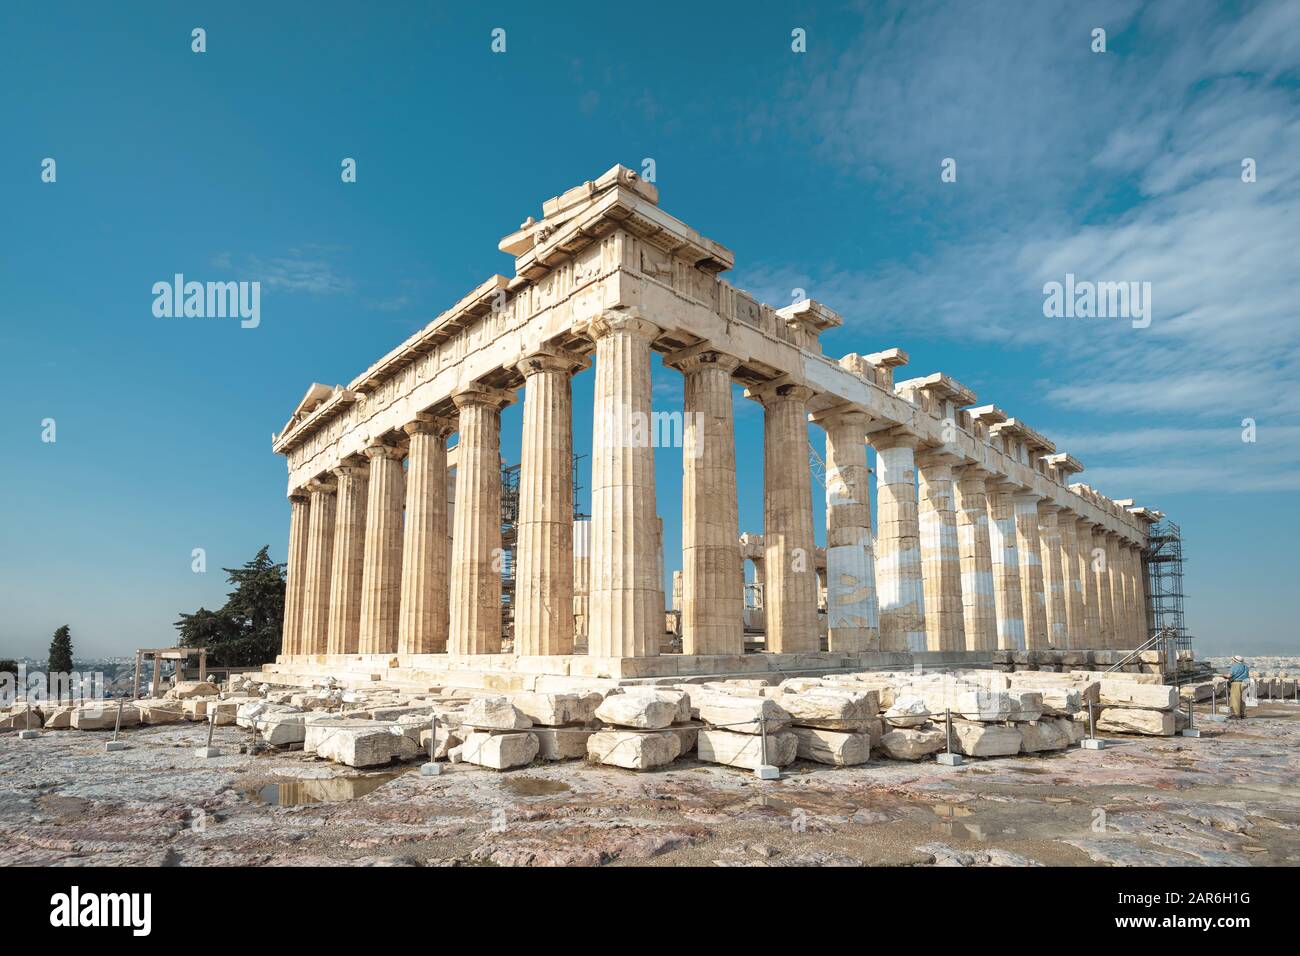 Parthenon auf der Akropolis von Athen, Griechenland. Berühmte Parthenon ist das Wahrzeichen von Athen. Ruinen von majestätischen Tempel auf der Akropolis. Stockfoto